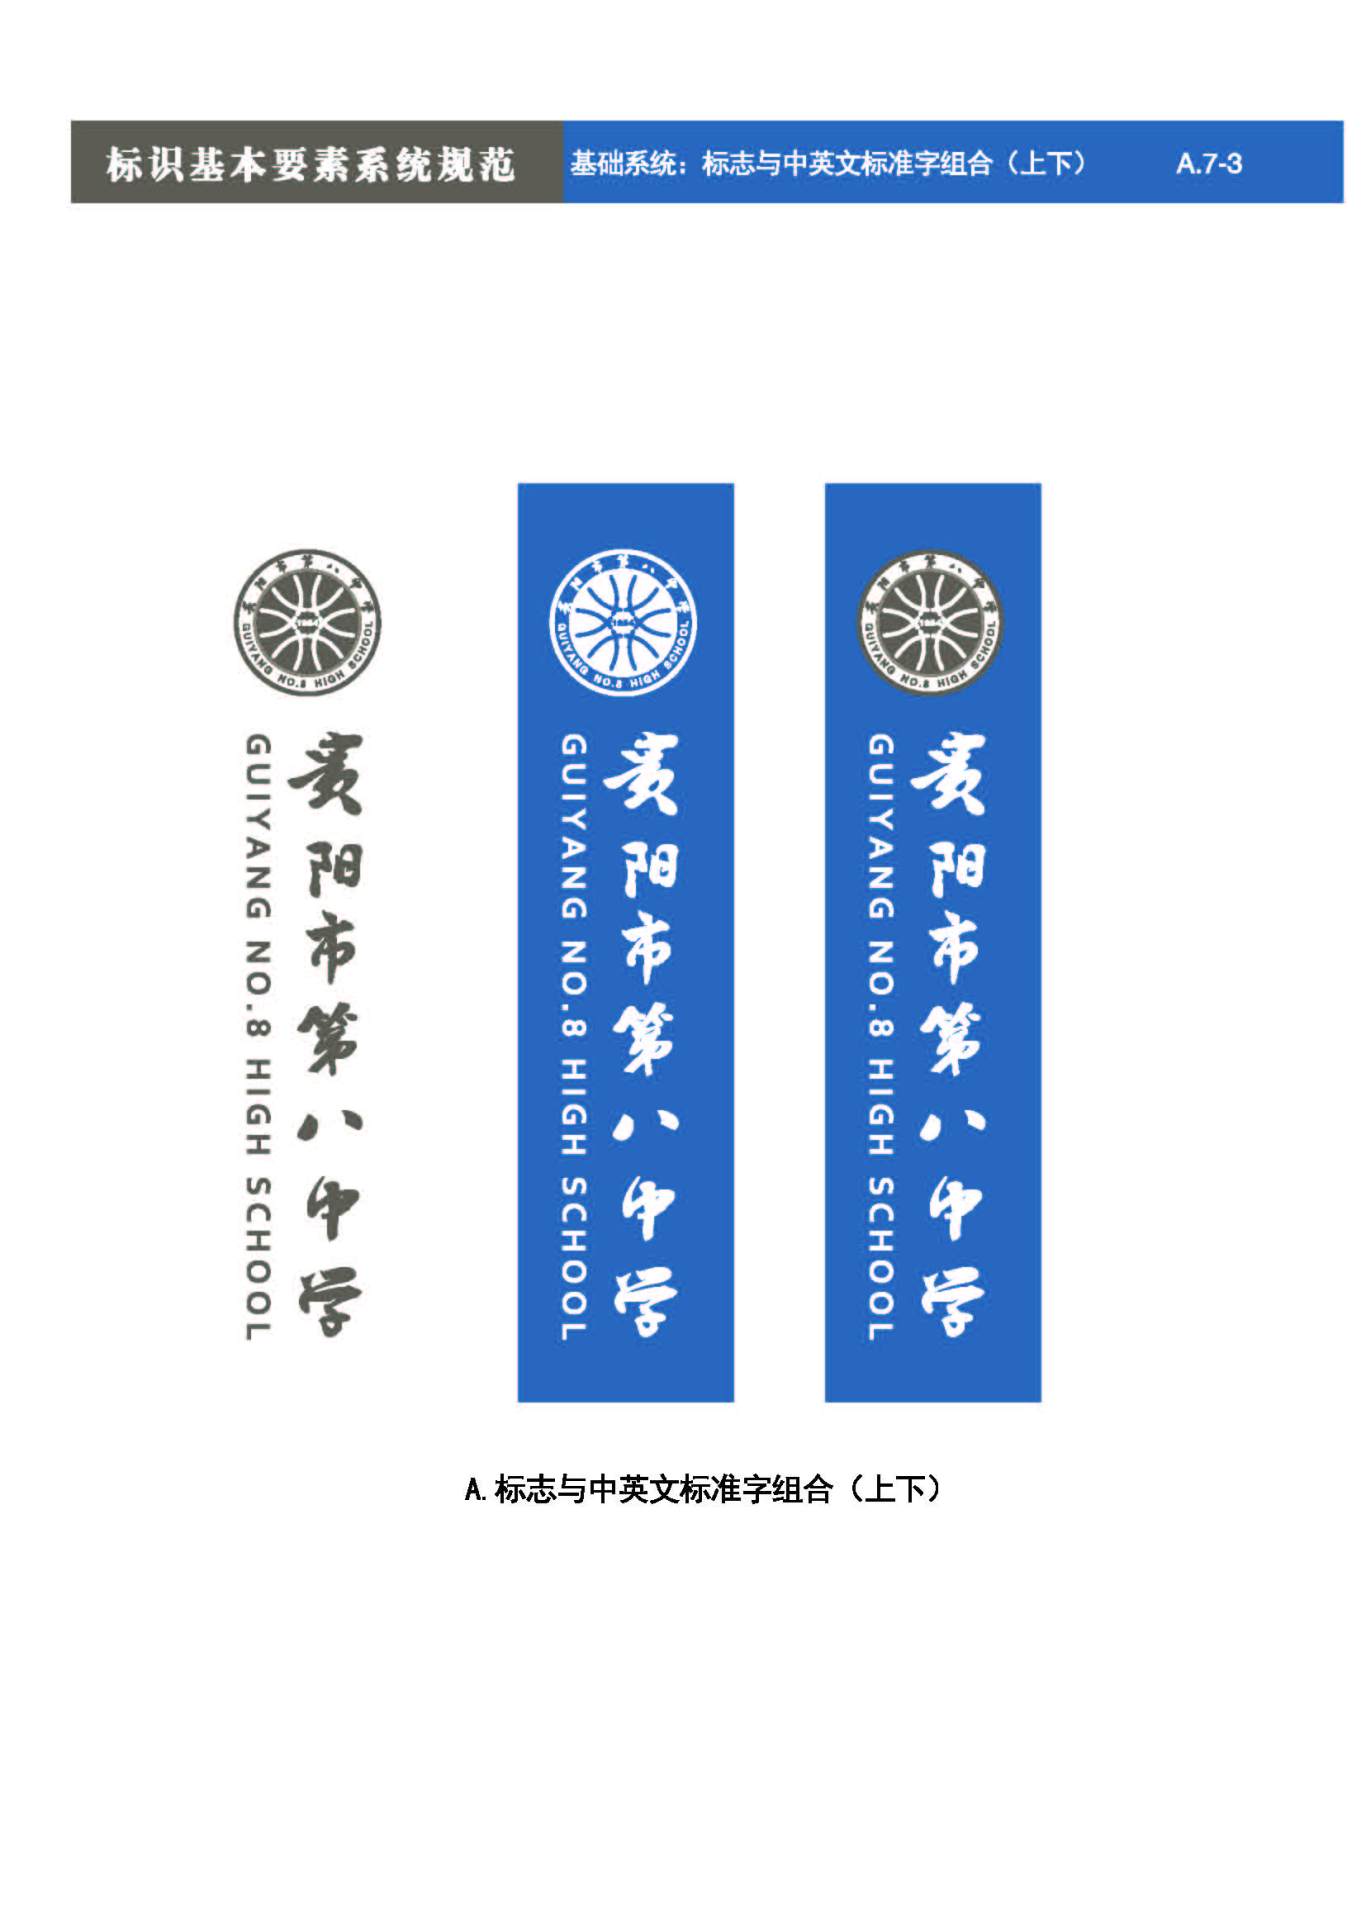 贵阳第八中学Logo、VIS设计图24